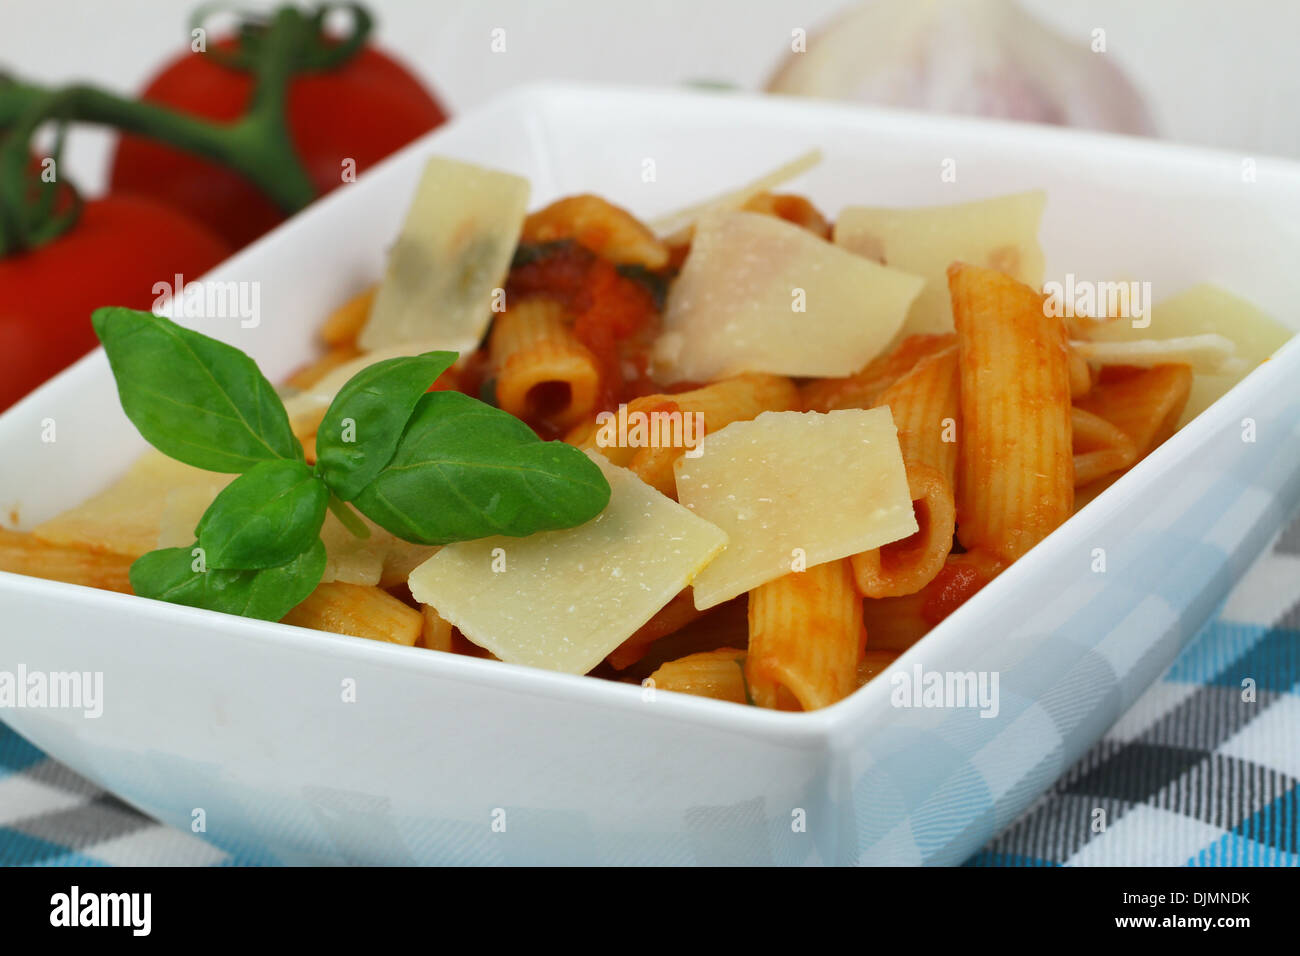 Pasta with tomato sauce, grana padano cheese and fresh basil Stock Photo